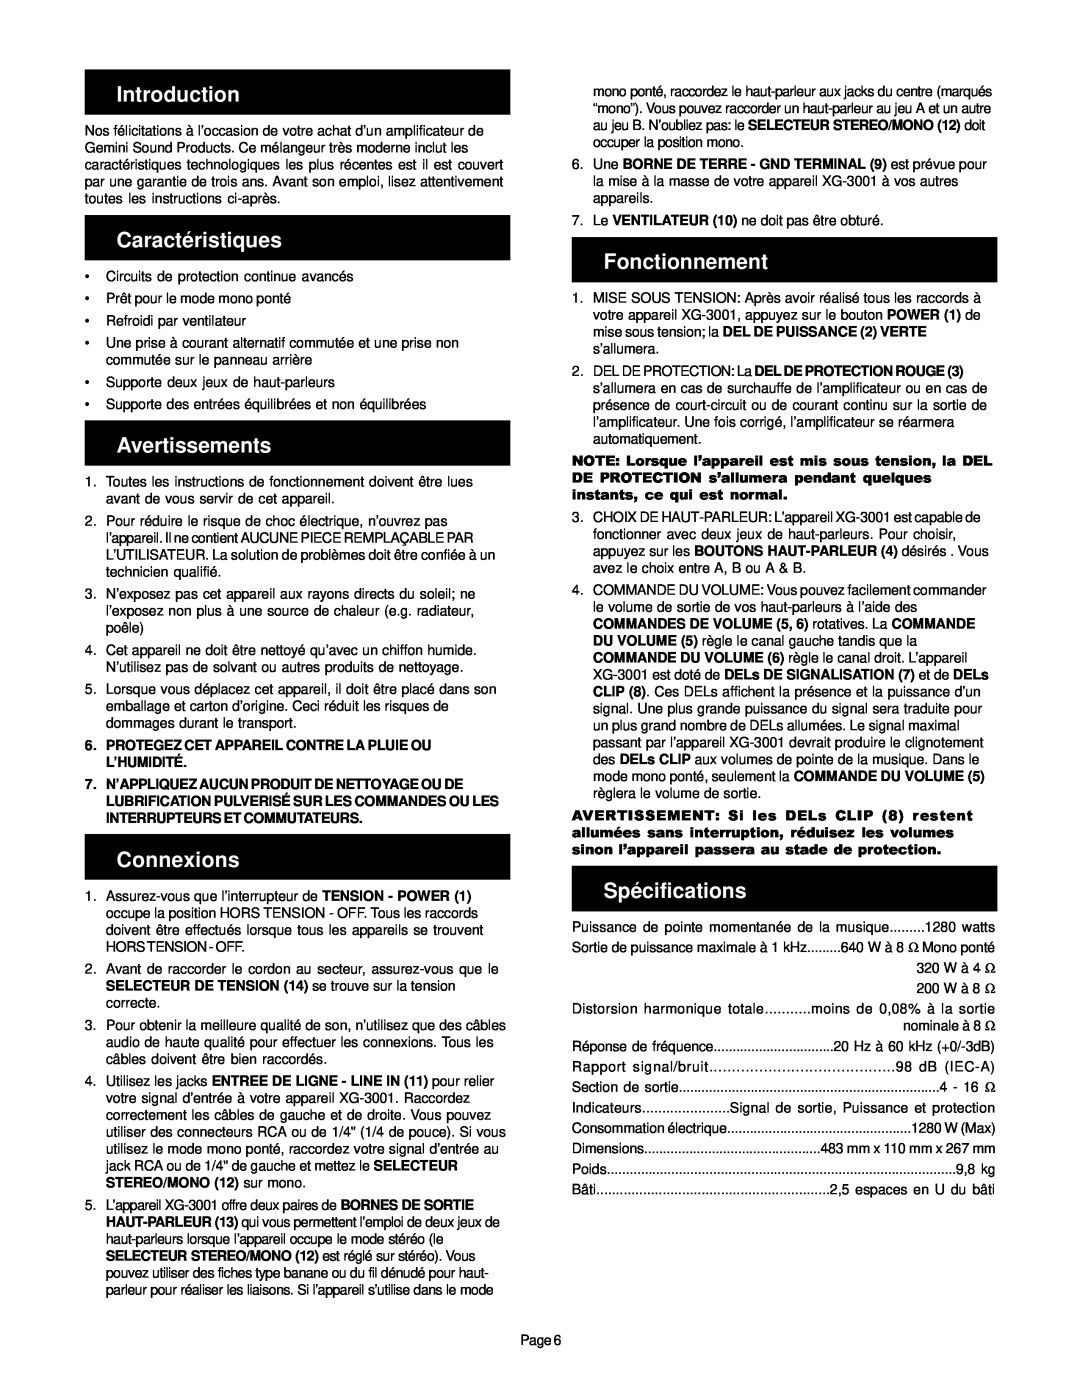 Gemini XG-3001 manual Caractéristiques, Avertissements, Connexions, Fonctionnement, Spécifications, Introduction 